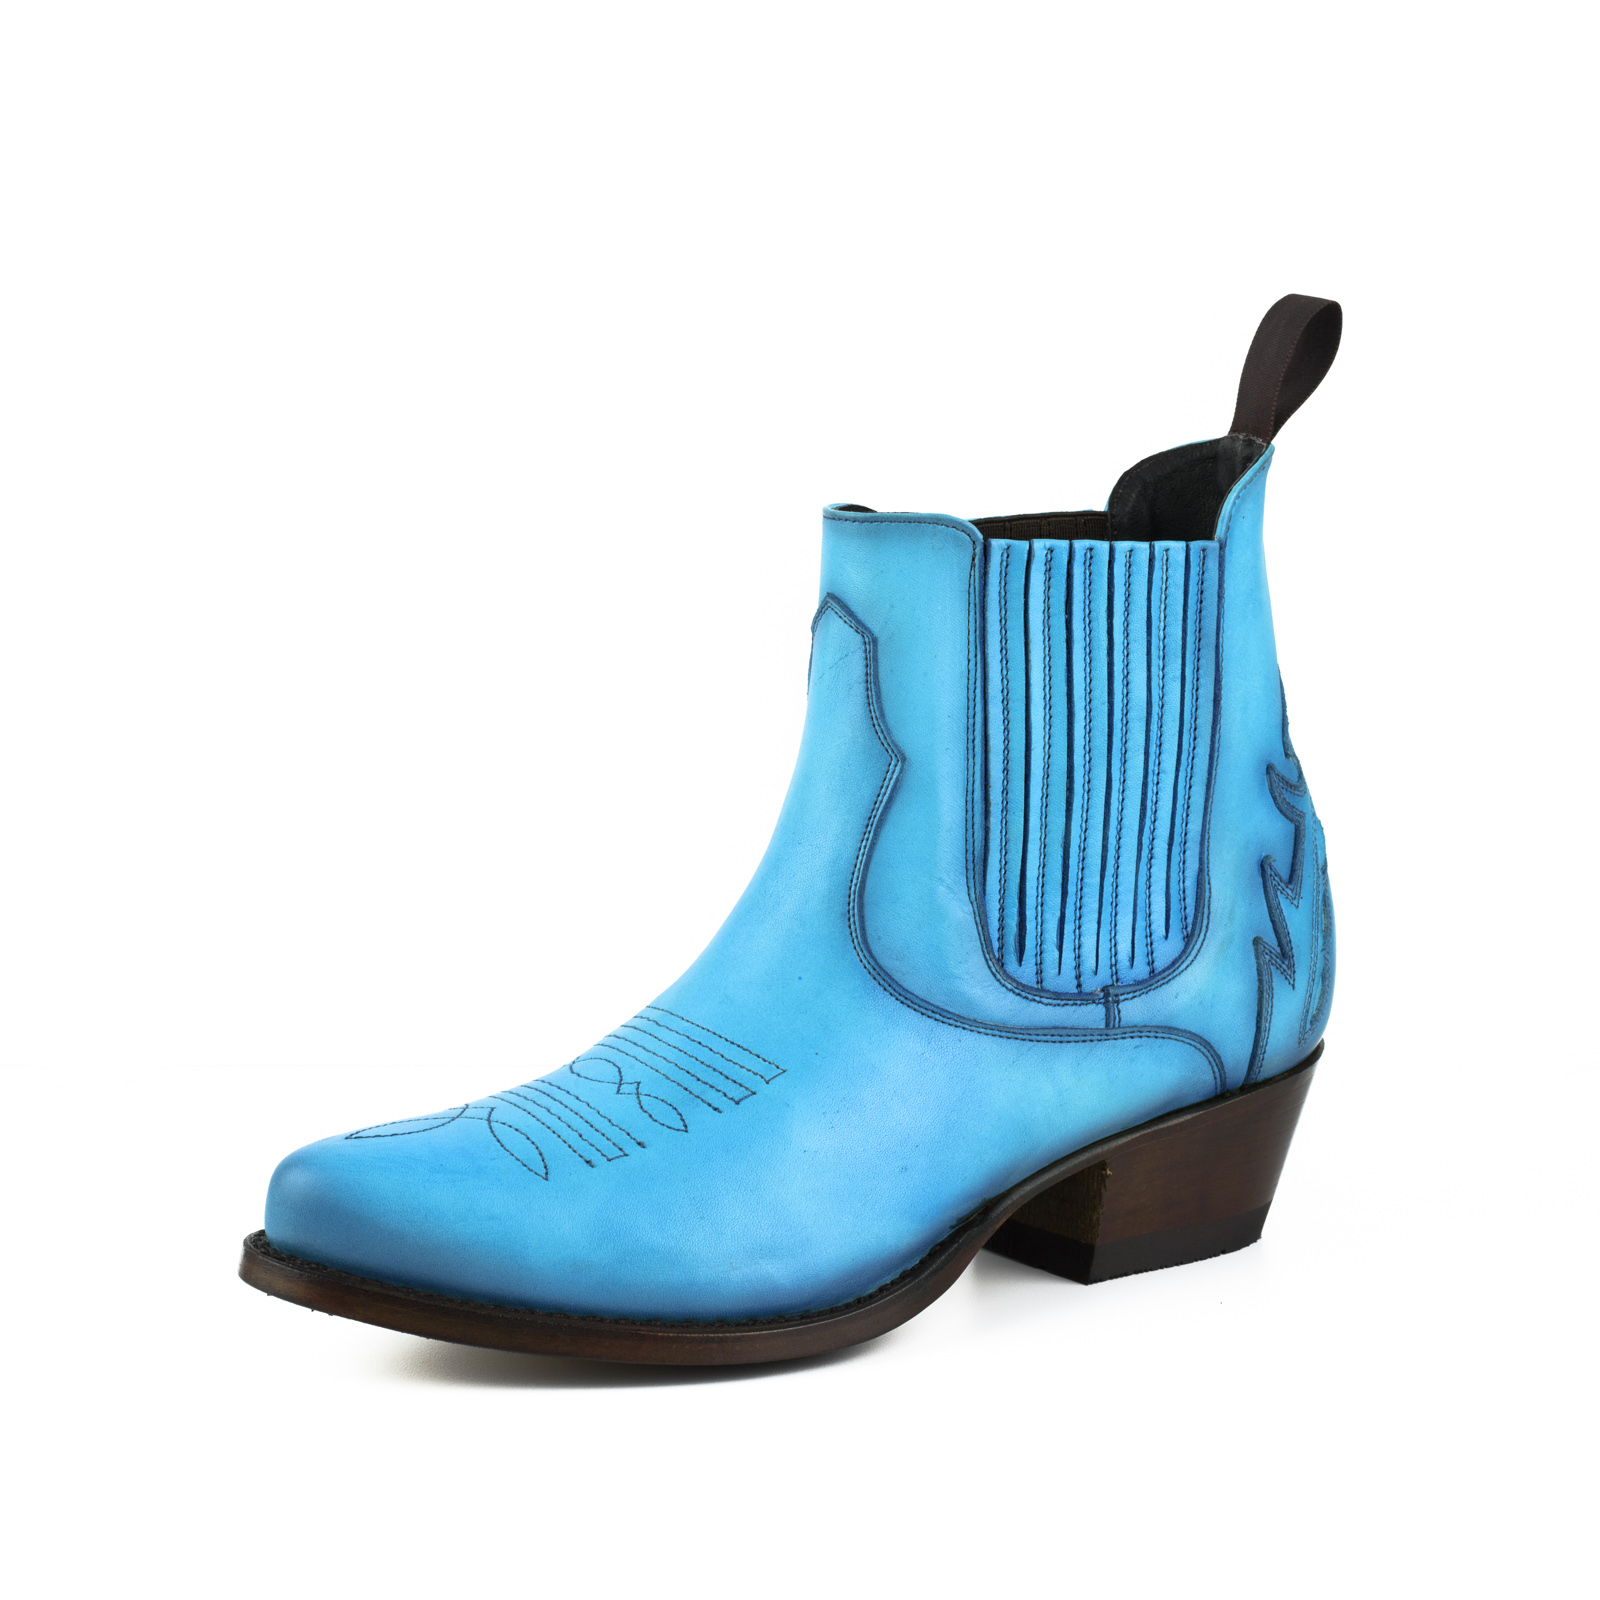 mayura-boots-modelo-marilyn-2487-turquesa-1